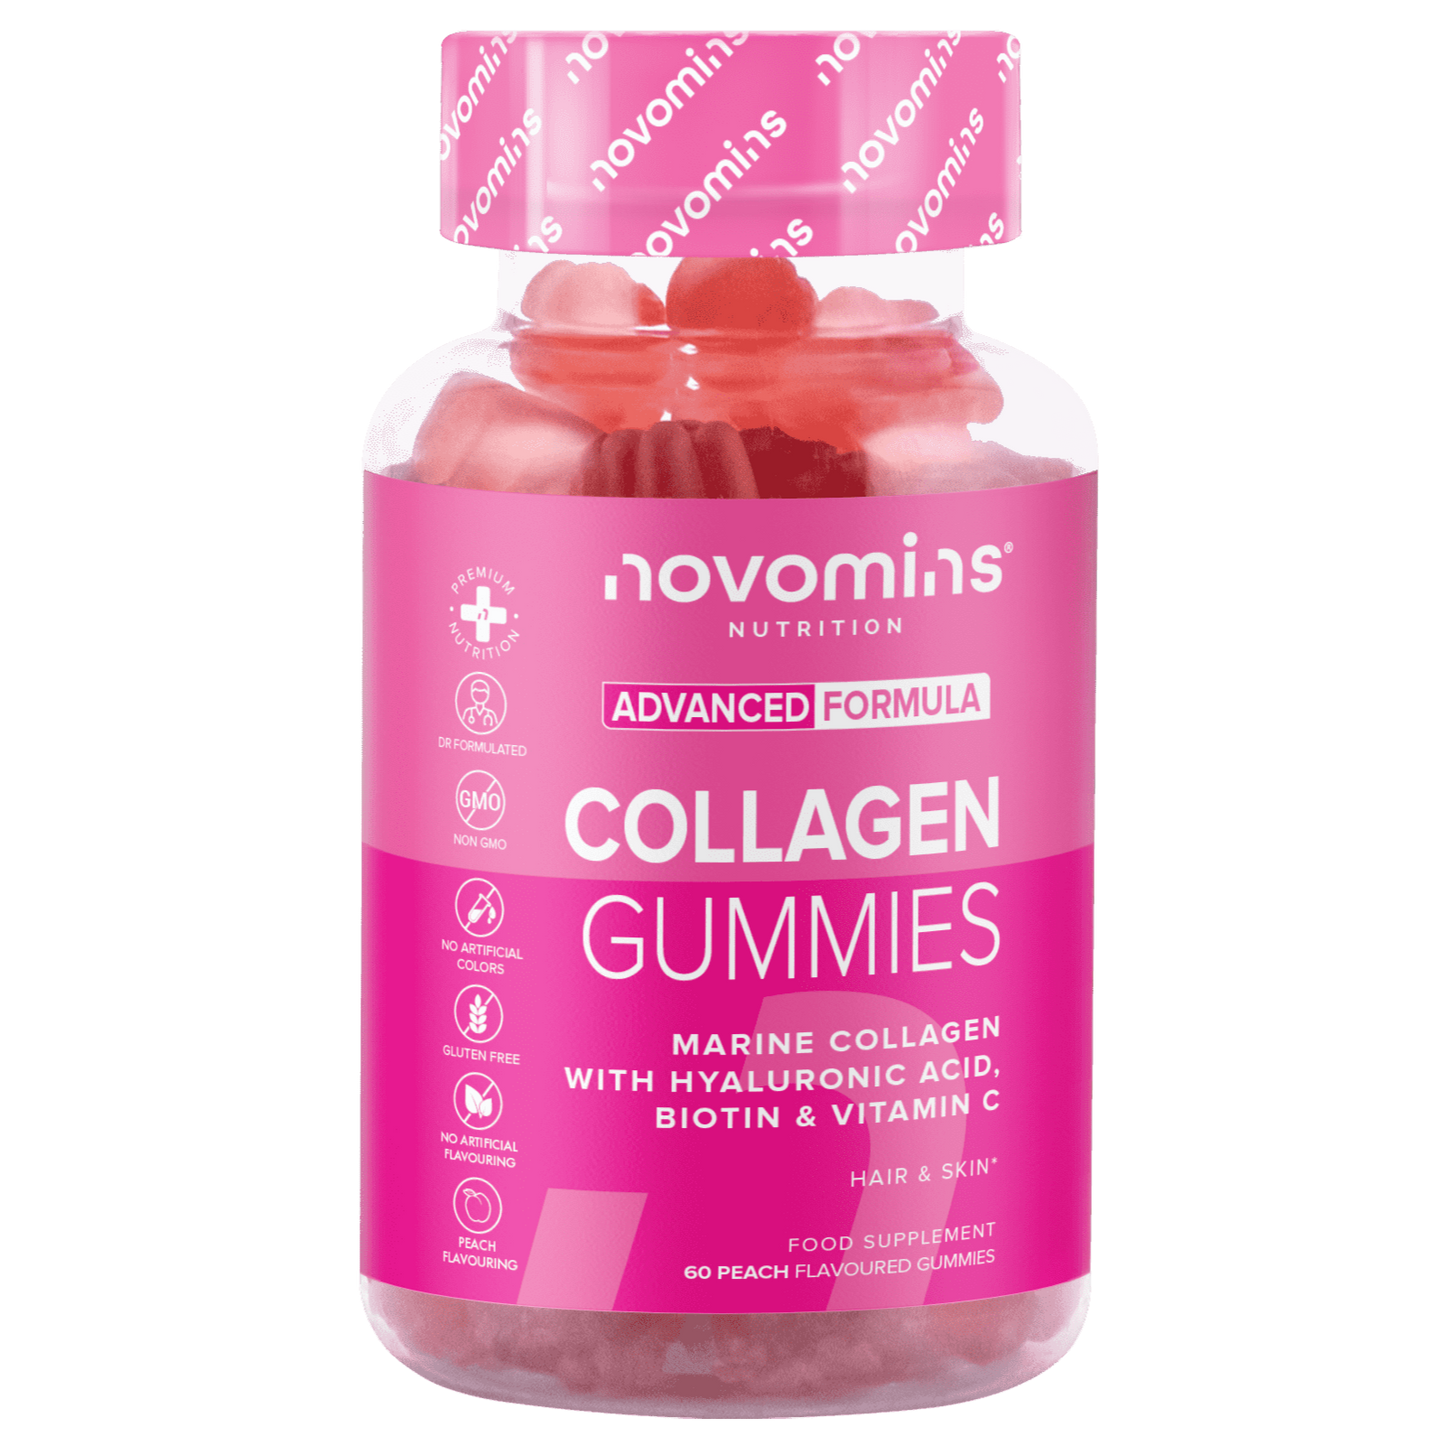 novomins collagen gummies bottle